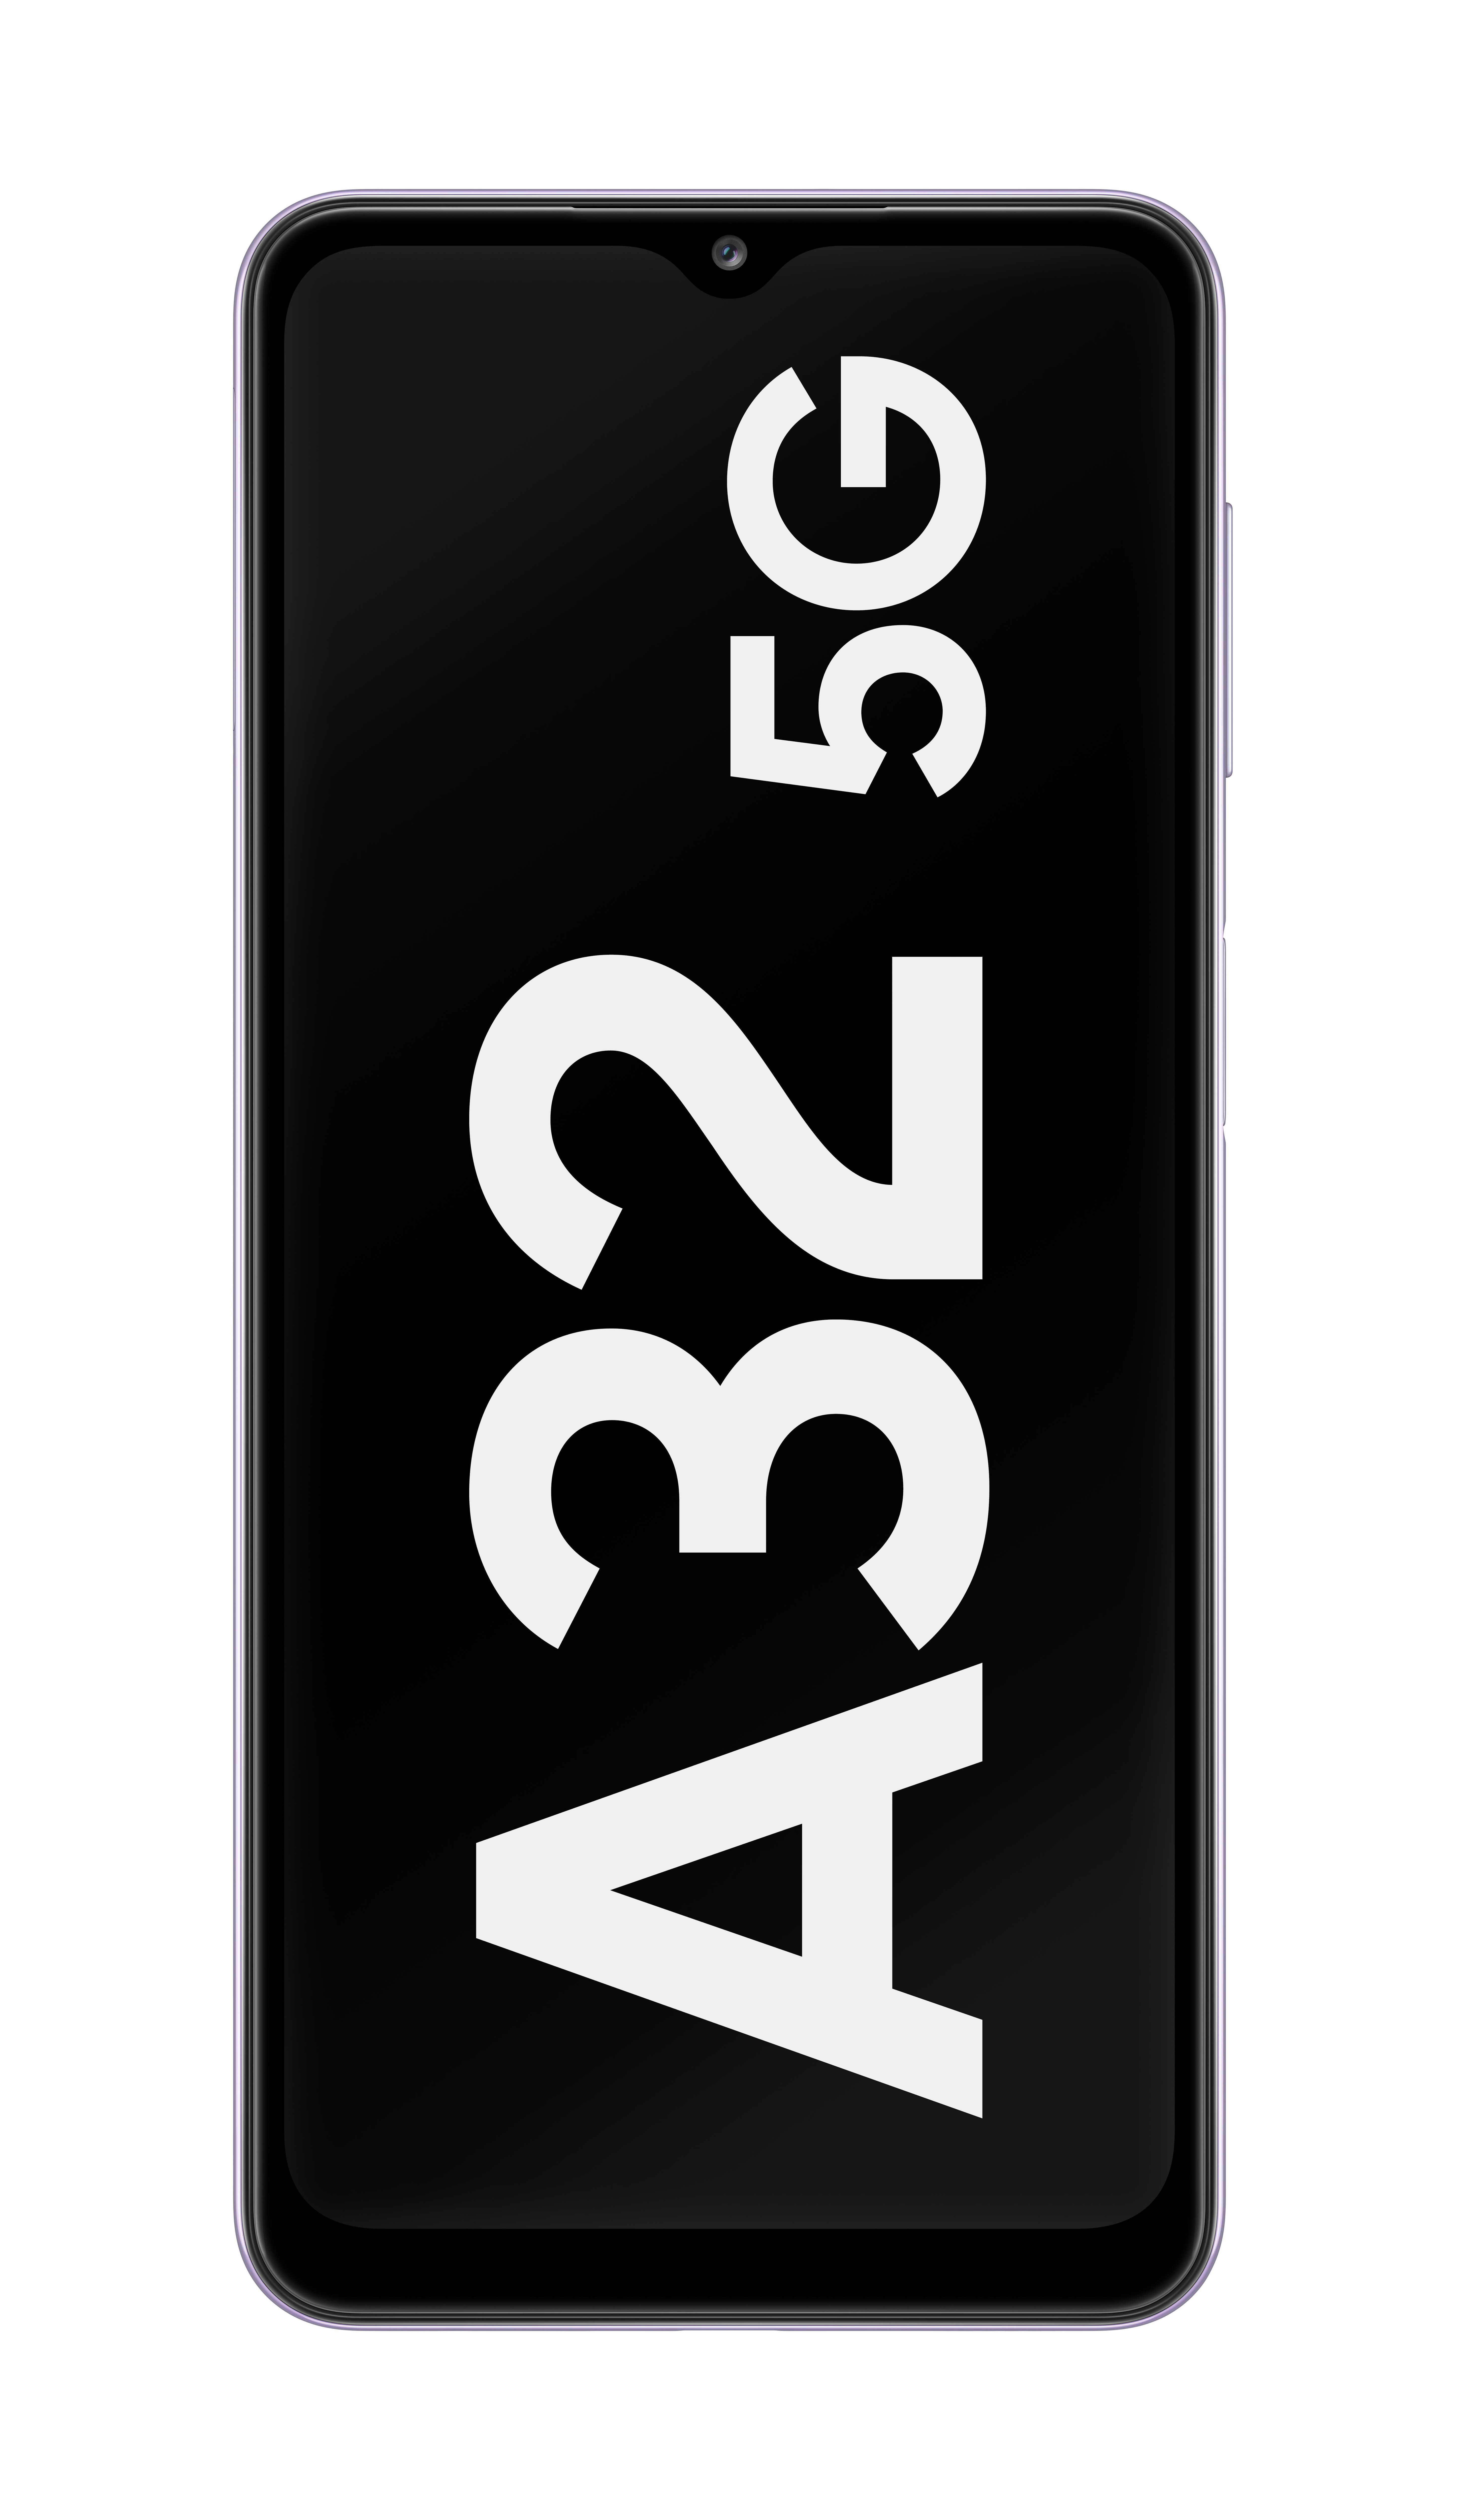 A32 Violett SIM Dual SAMSUNG GB 64 5G Galaxy